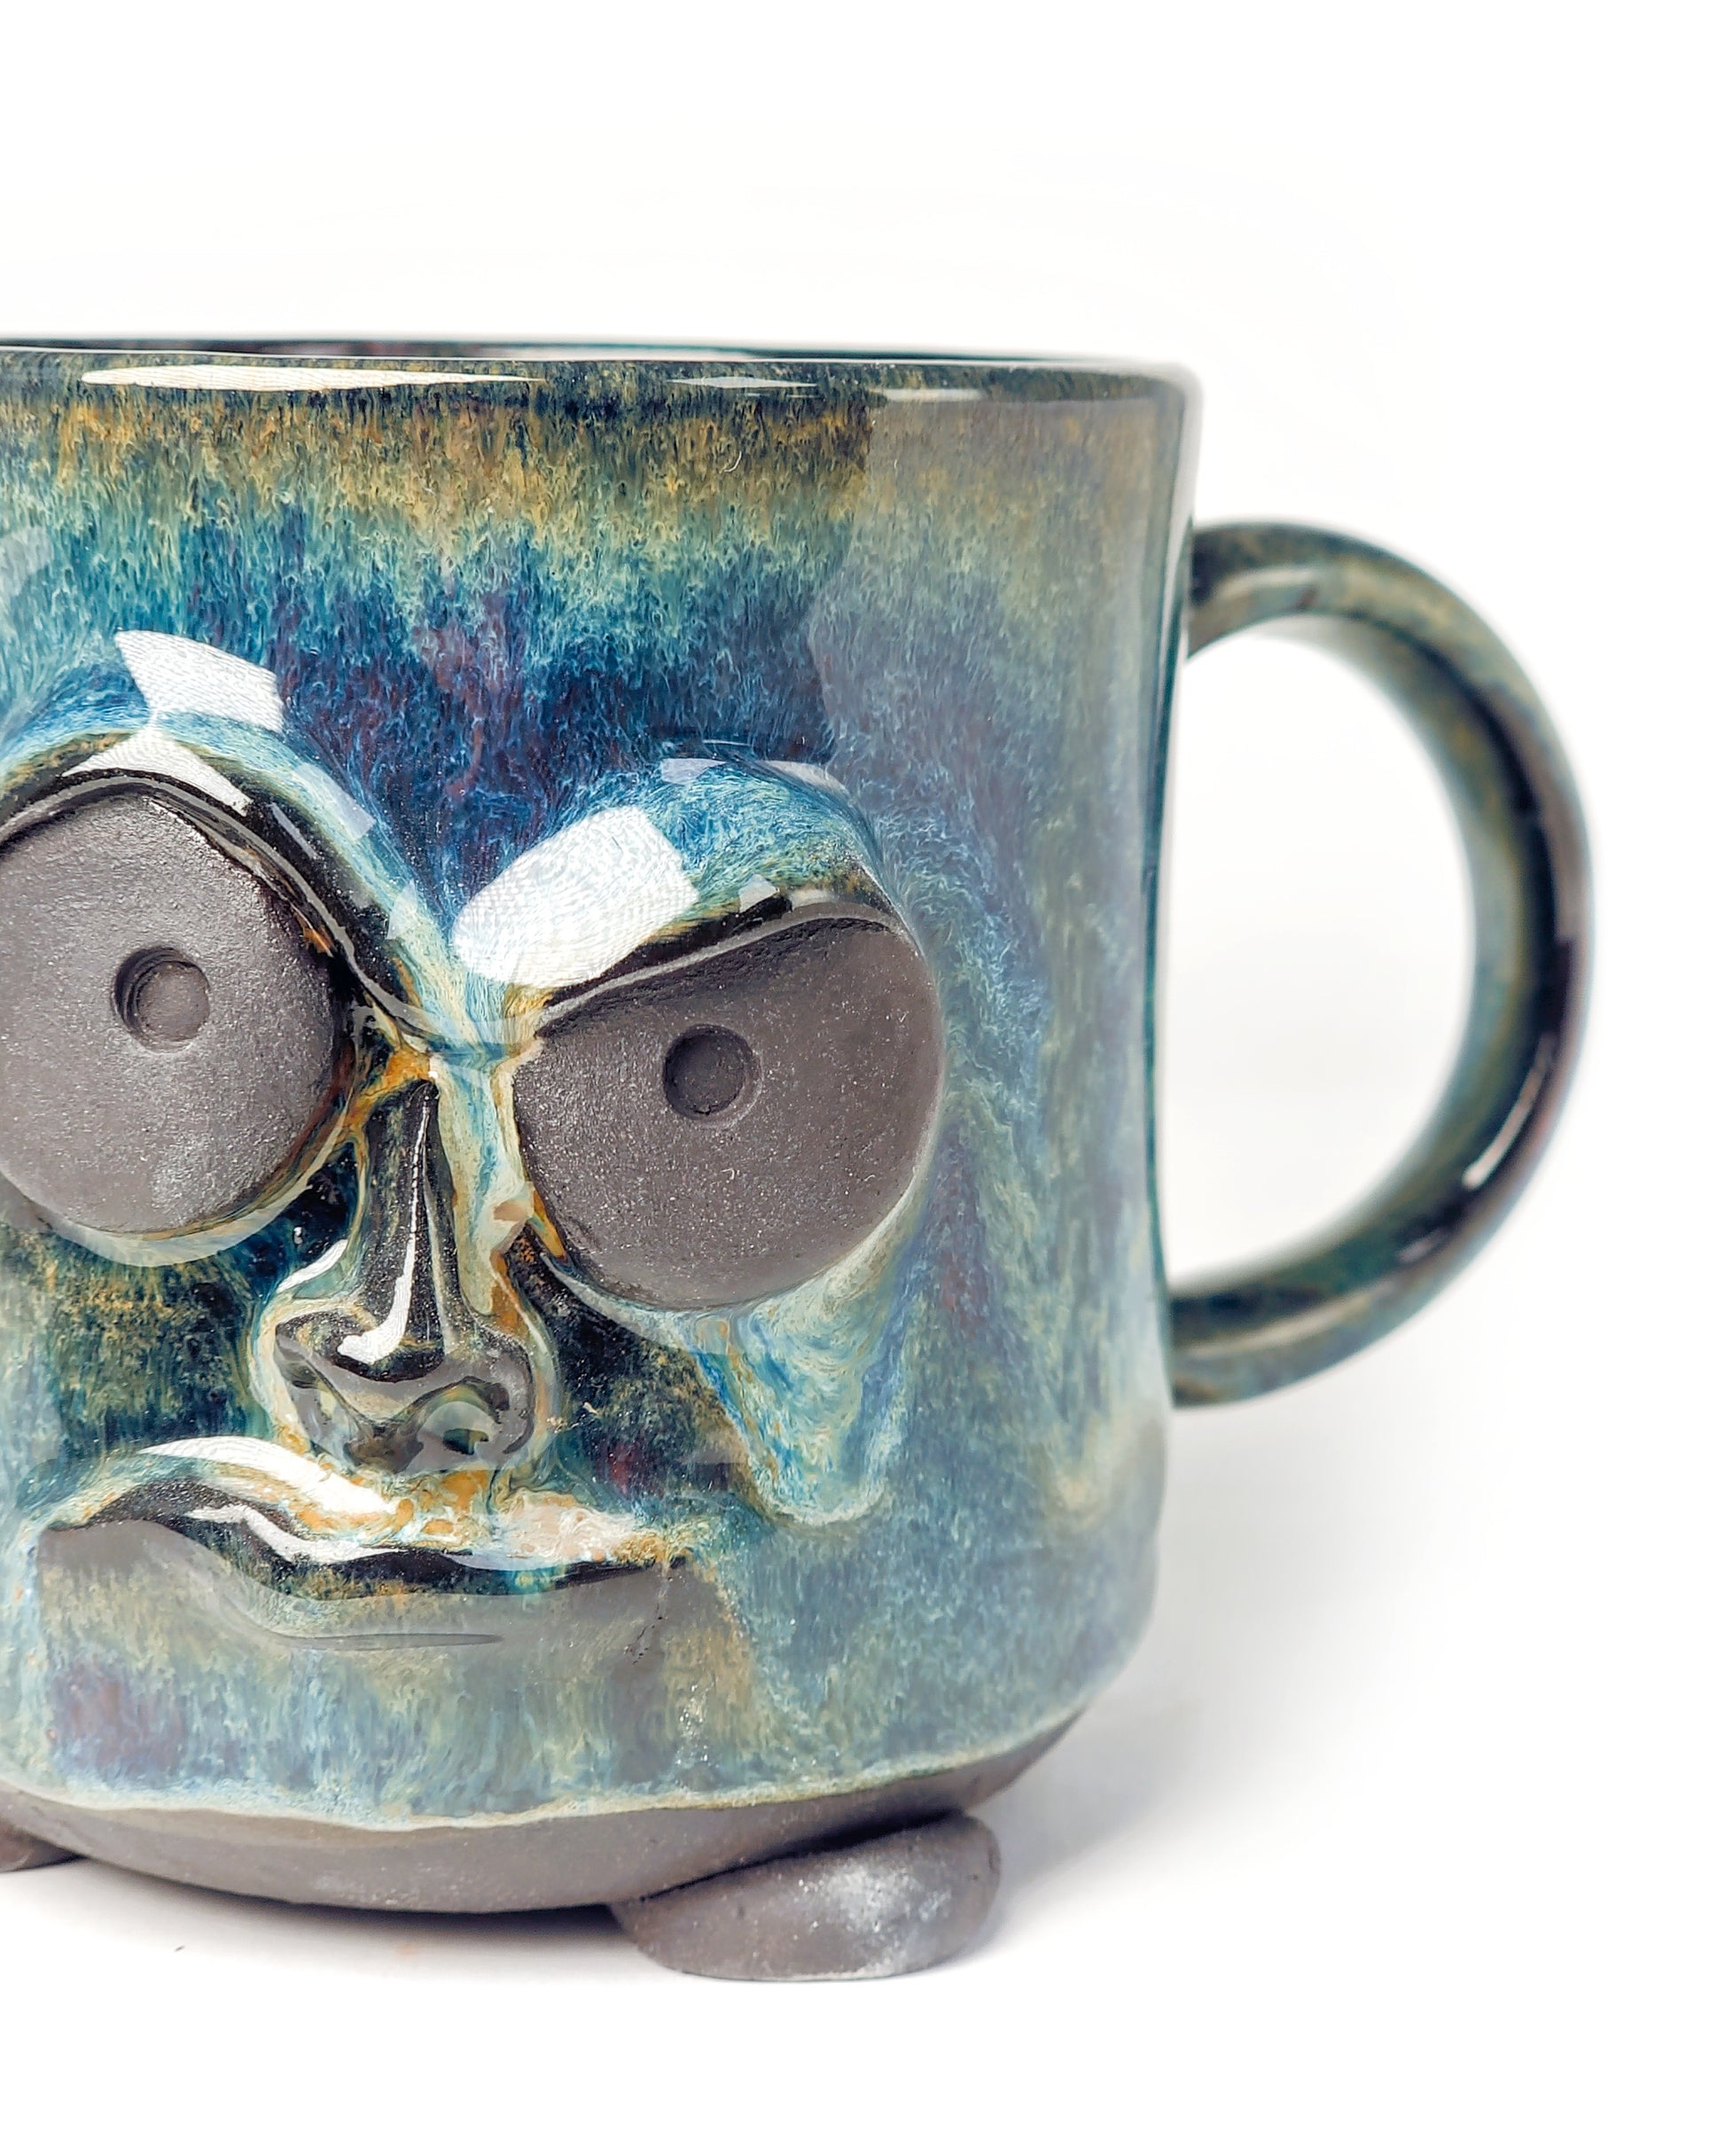 Kubek Grumpy 2 - Alike Pottery Studio  